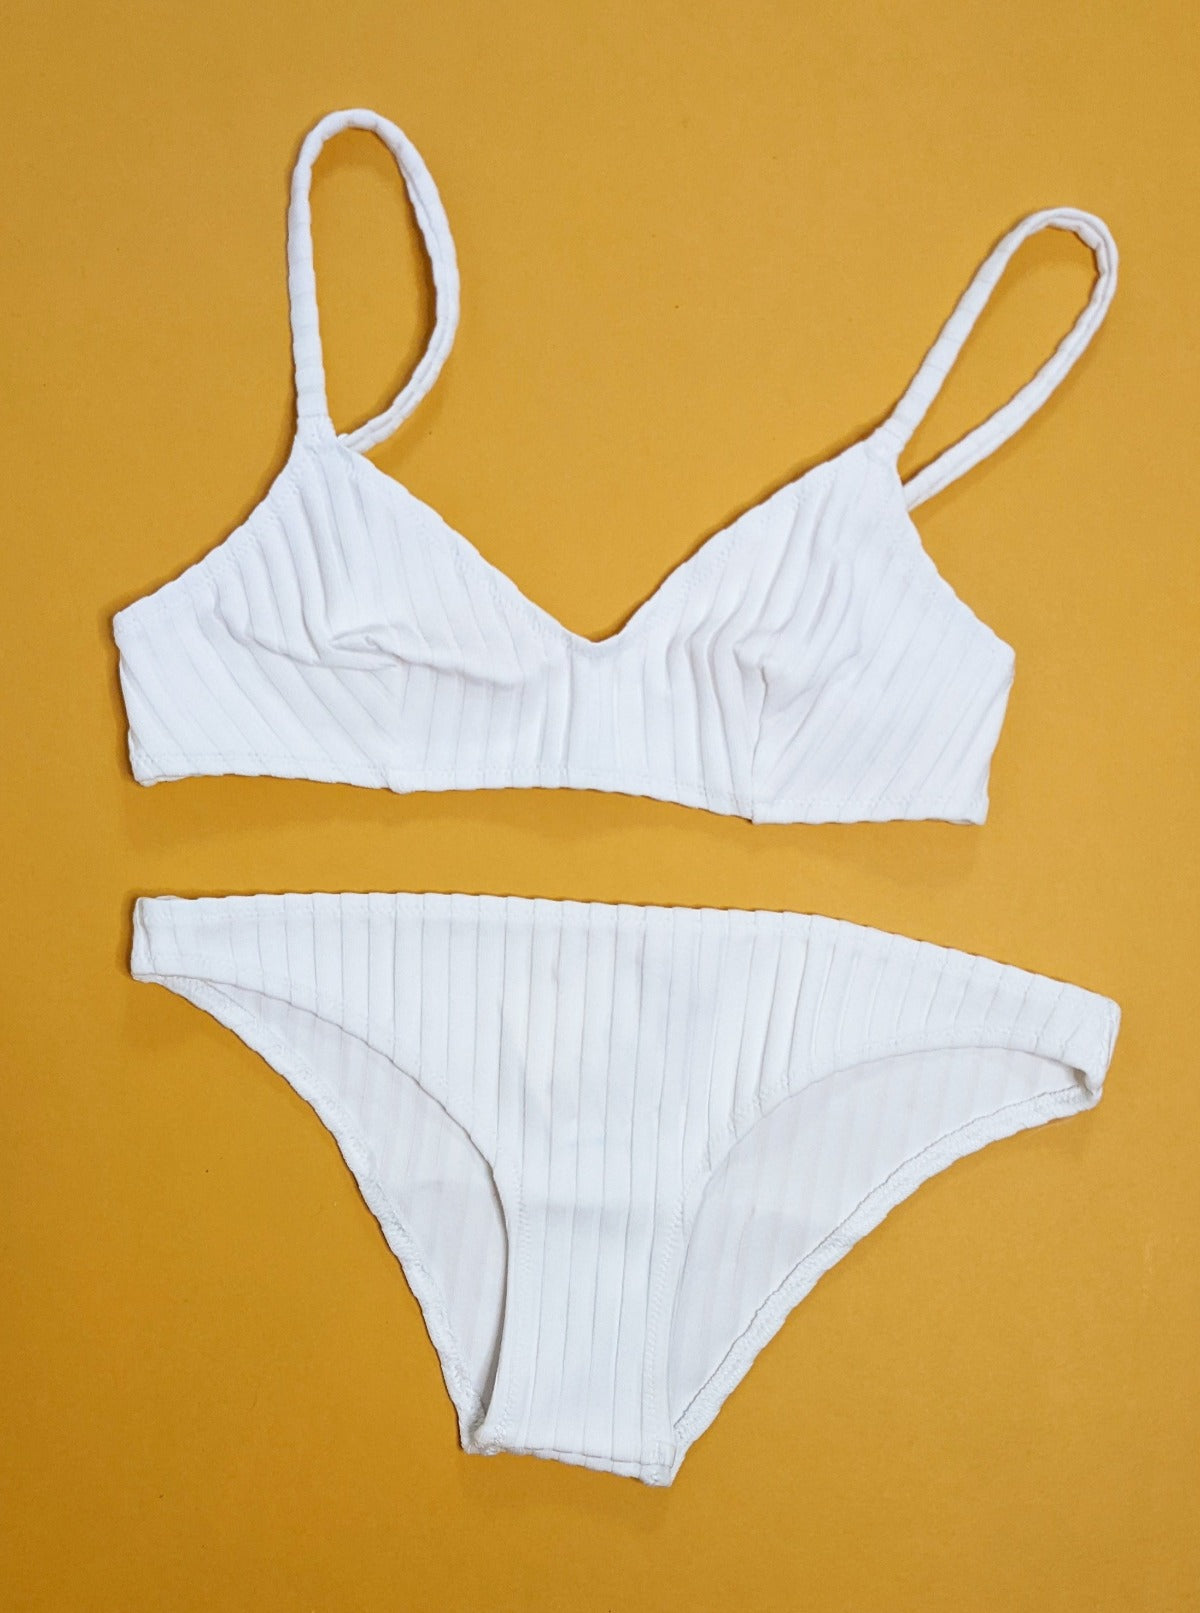 Solid & Striped: Rachel Bikini Top - Ribbed Marshmallow